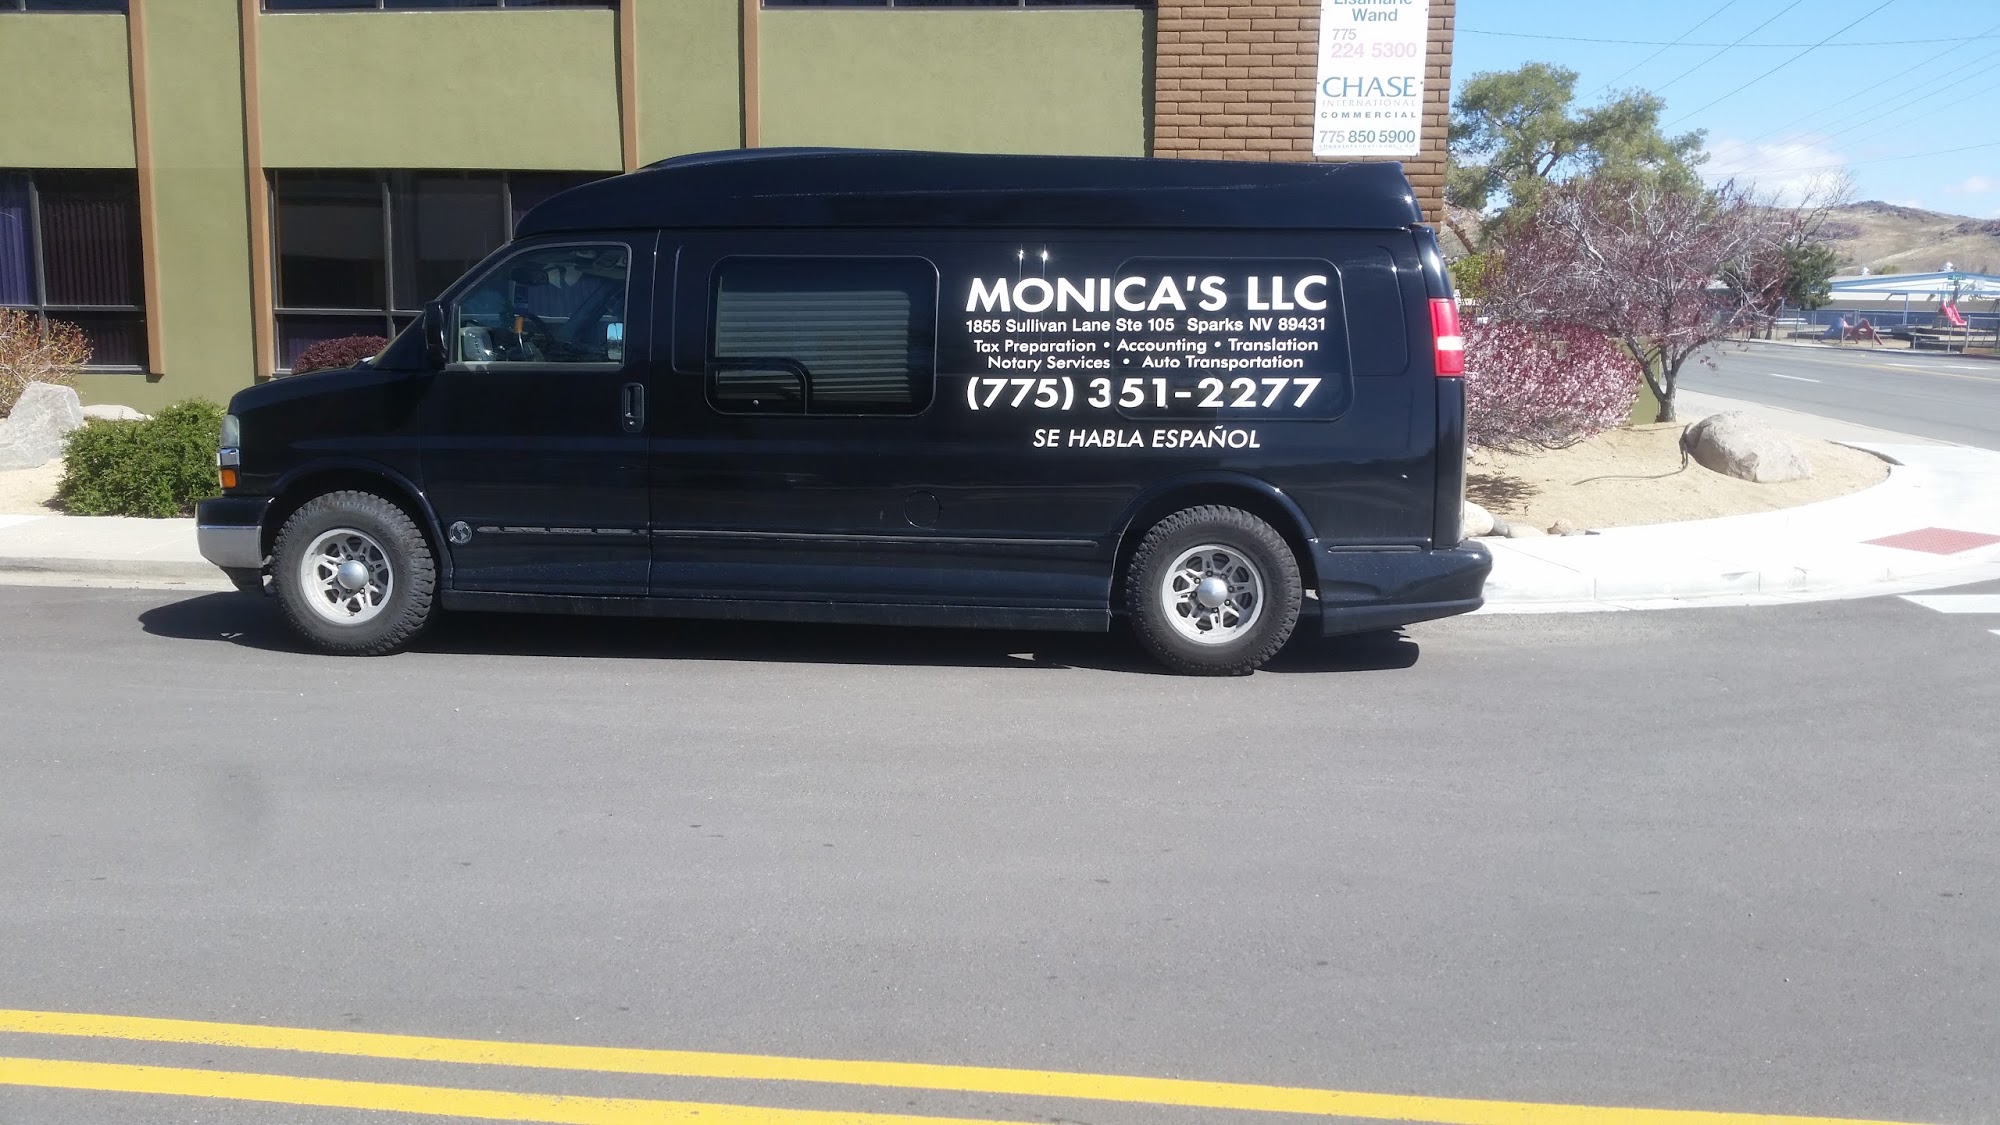 Monica's Tax Preparation LLC